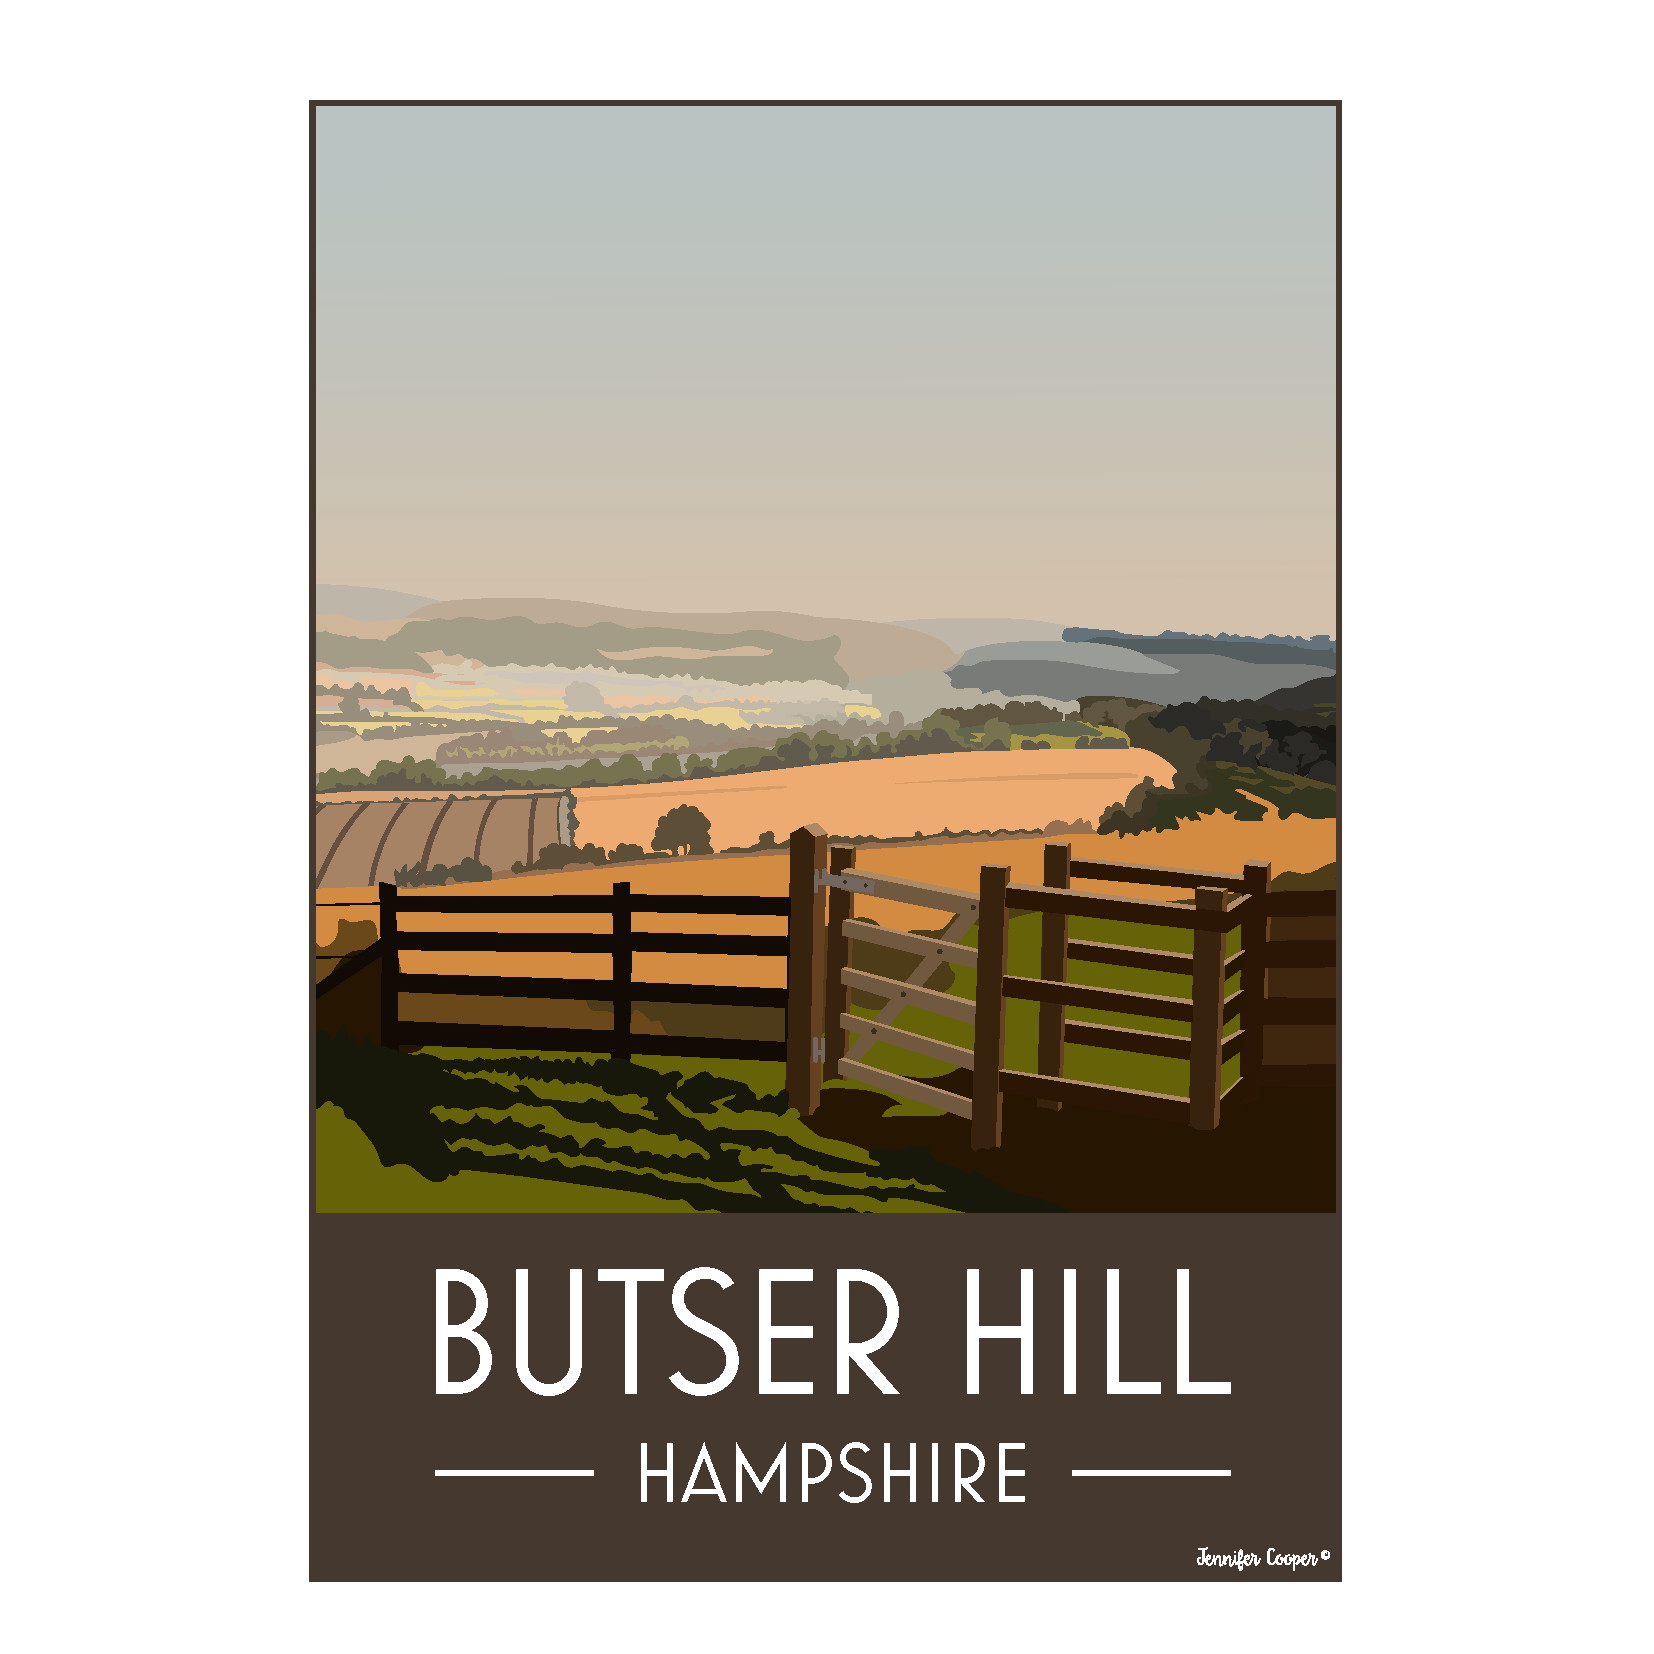 Butser Hill